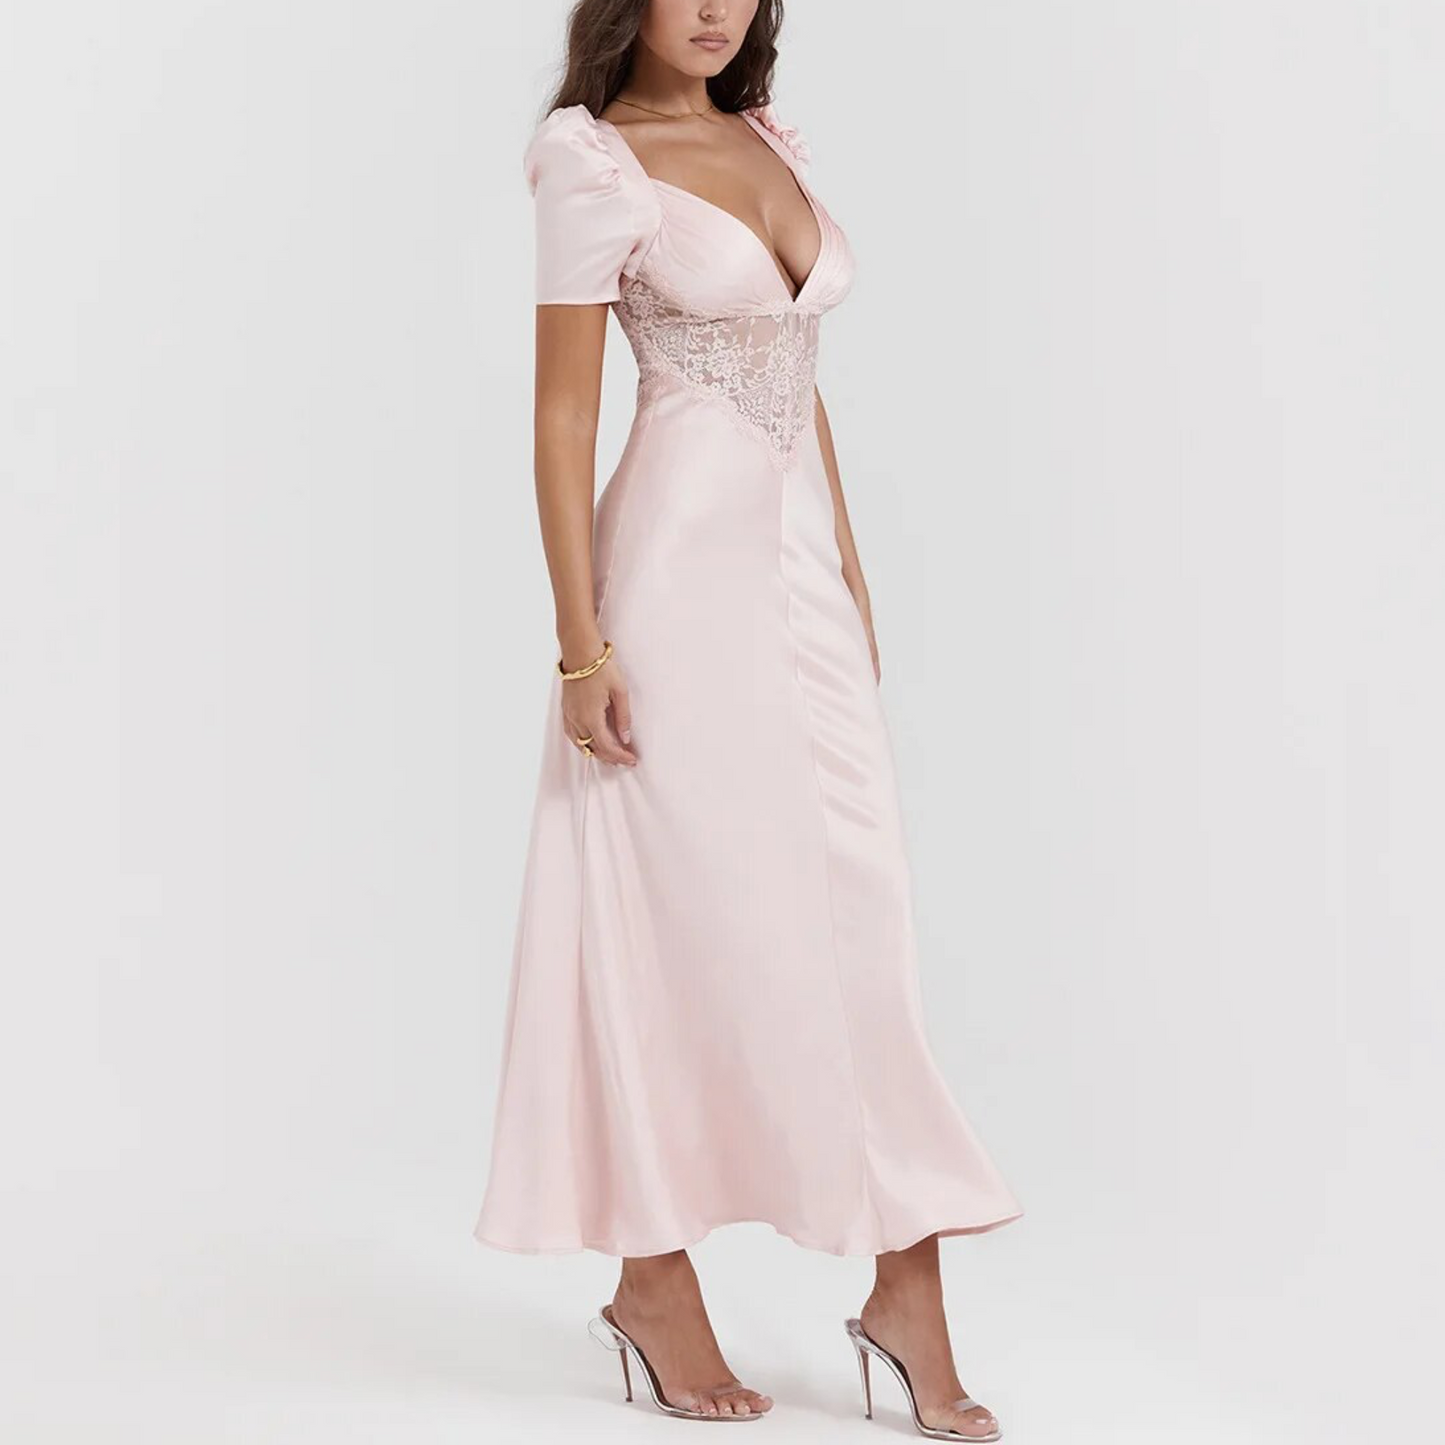 Bianca - Pink Satin Puff Sleeve Maxi Dress